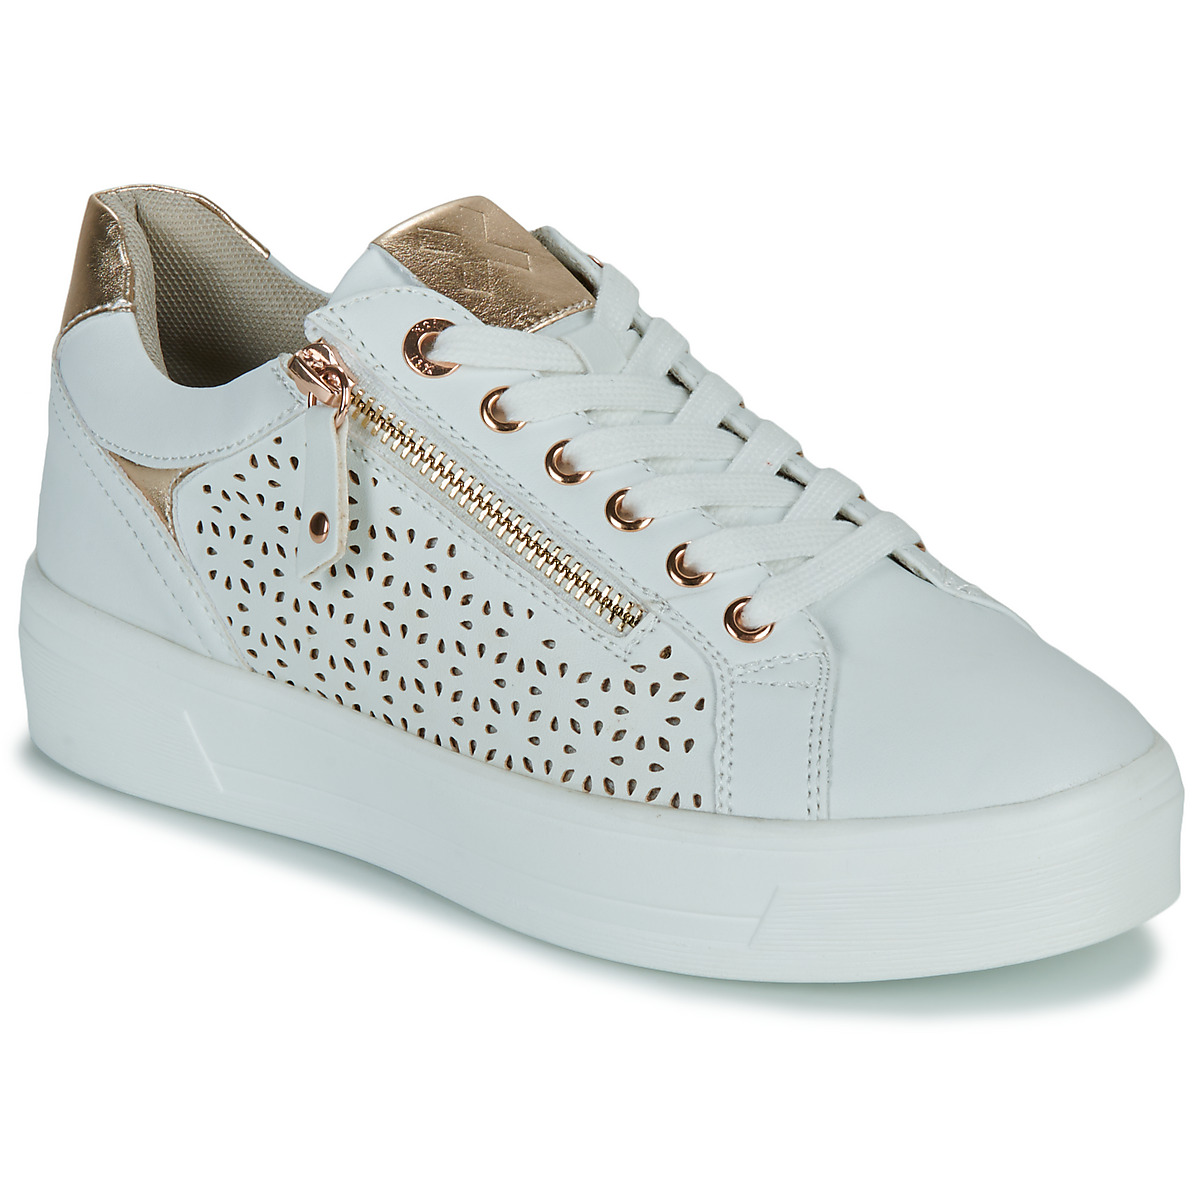 Schuhe Damen Sneaker Low Xti 142229 Weiß